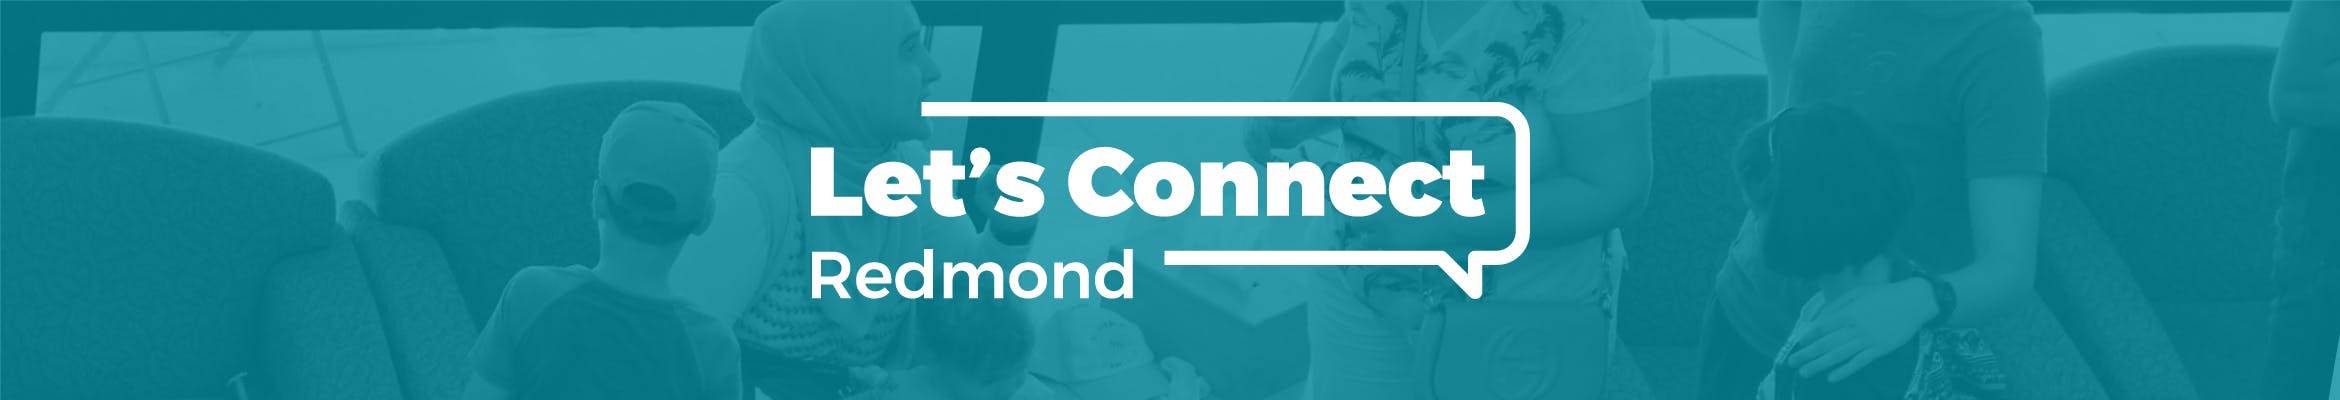 Let's Connect Redmond